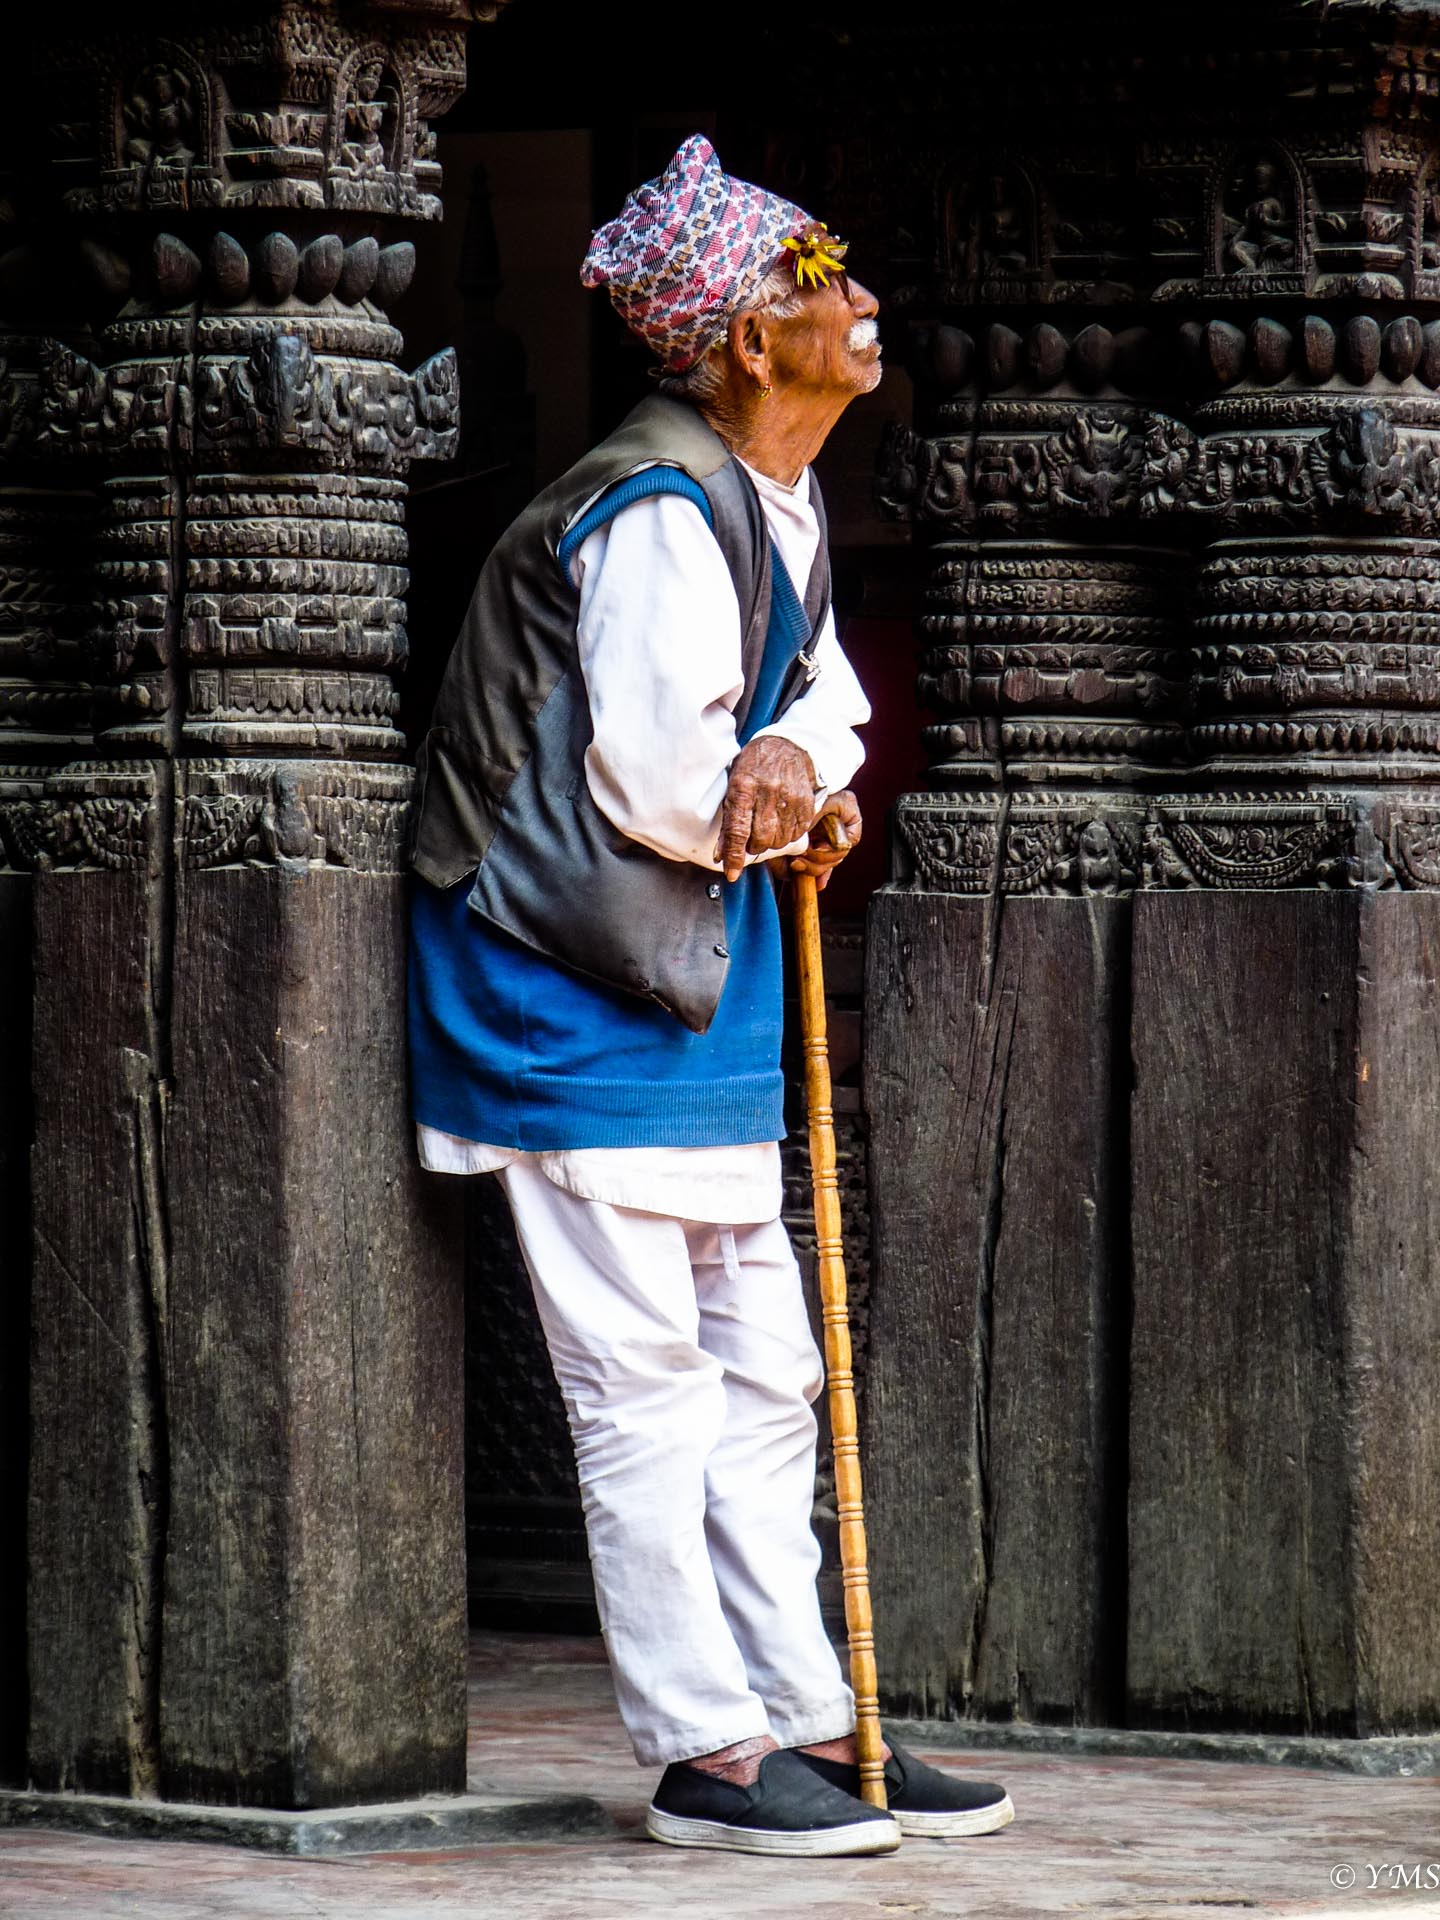 Nepal - Old Man